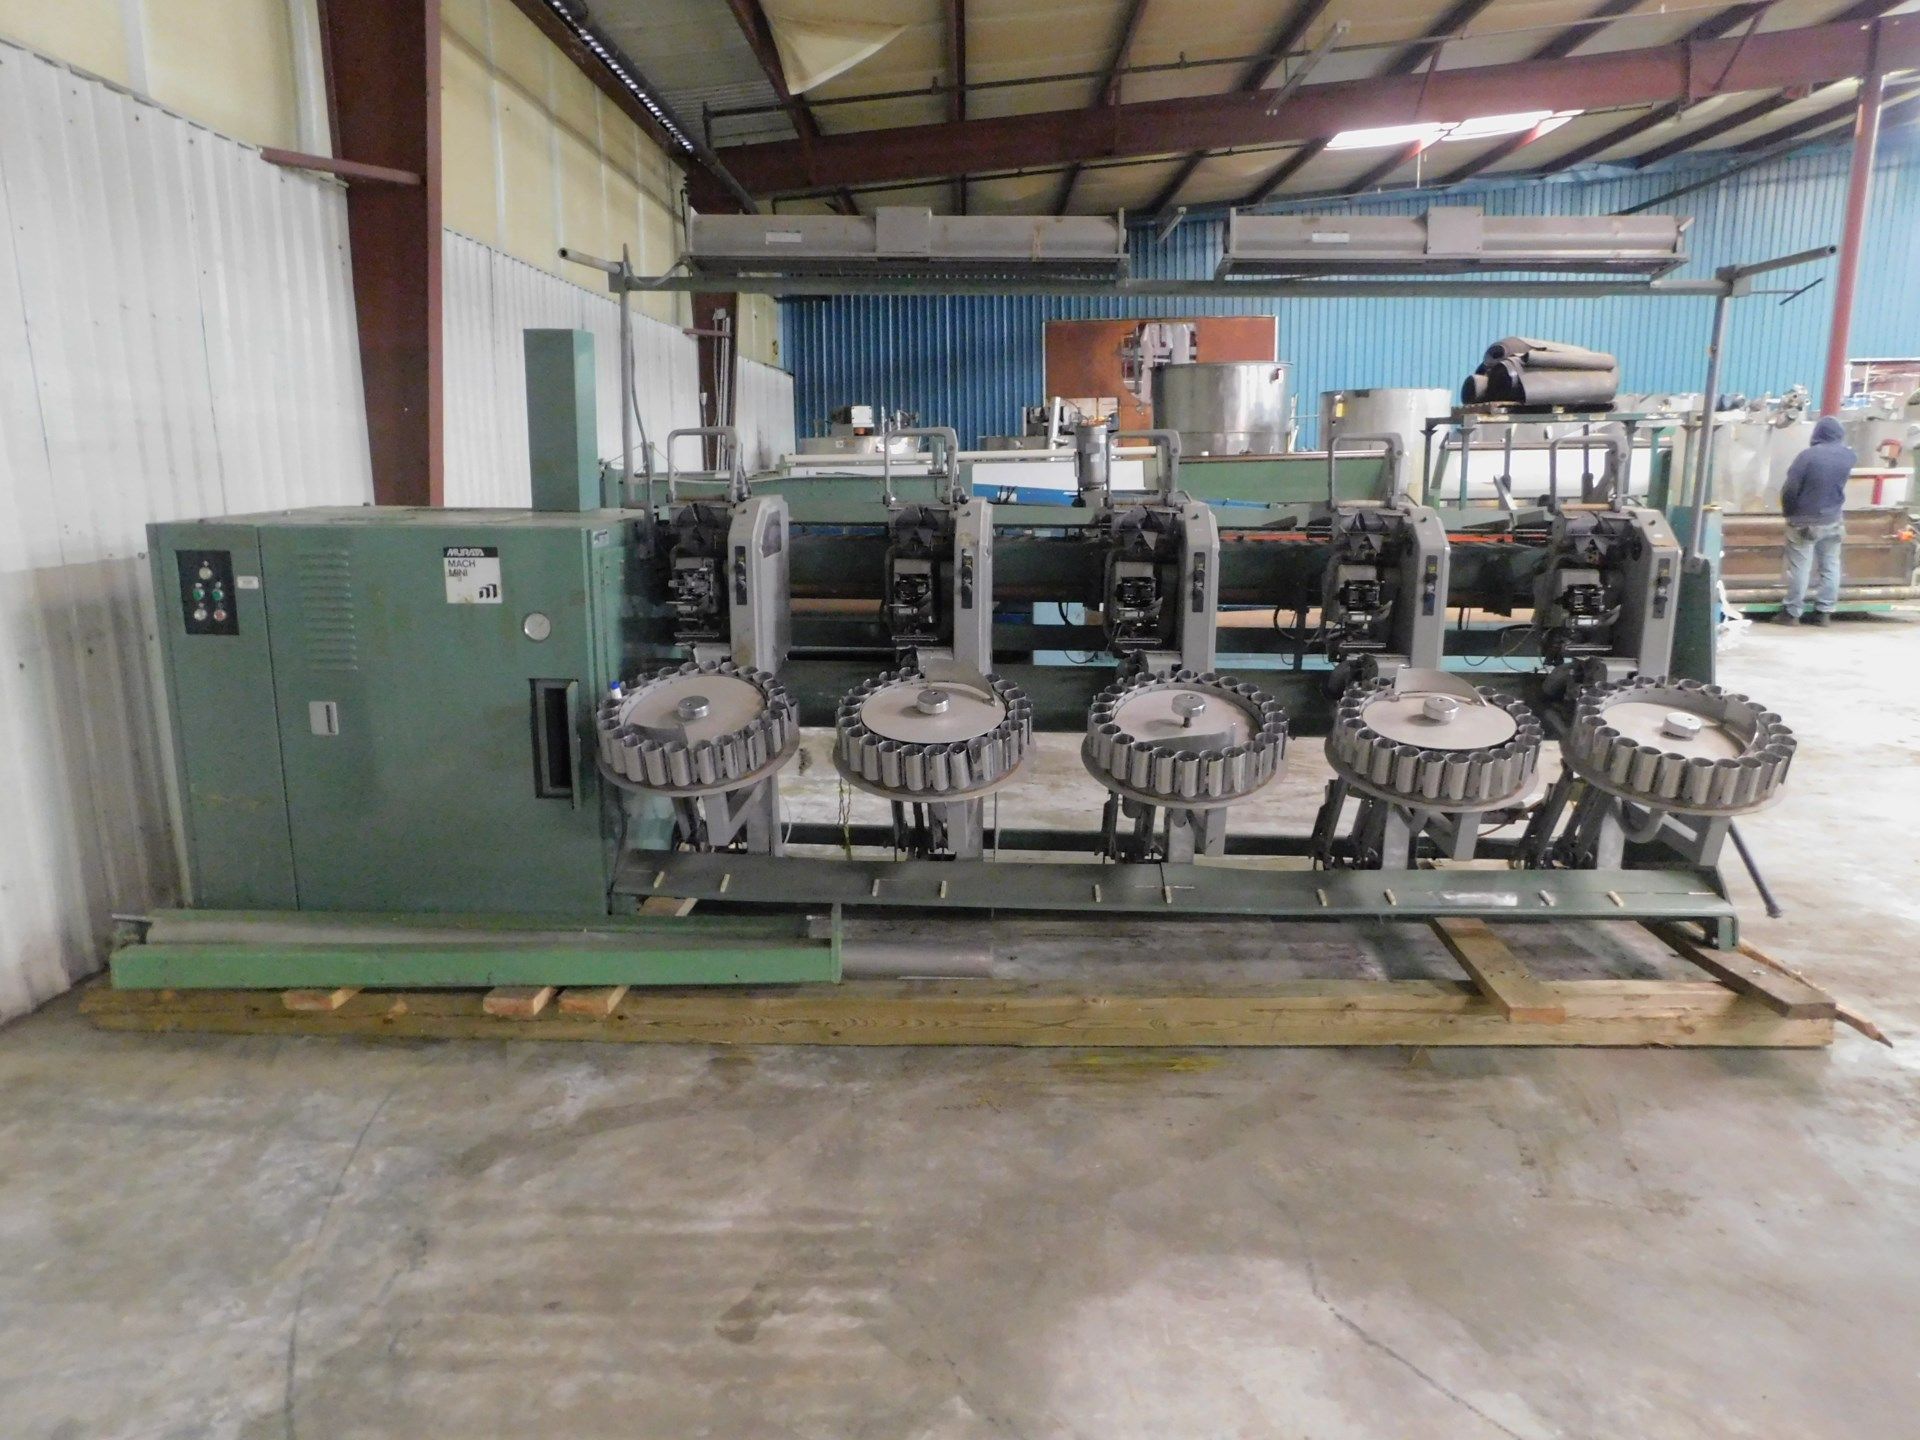 Murata Machinery Winding Machine, Model# 7R2, Serial# 89SX469040-01, 380V, 50 Hz, Working Width